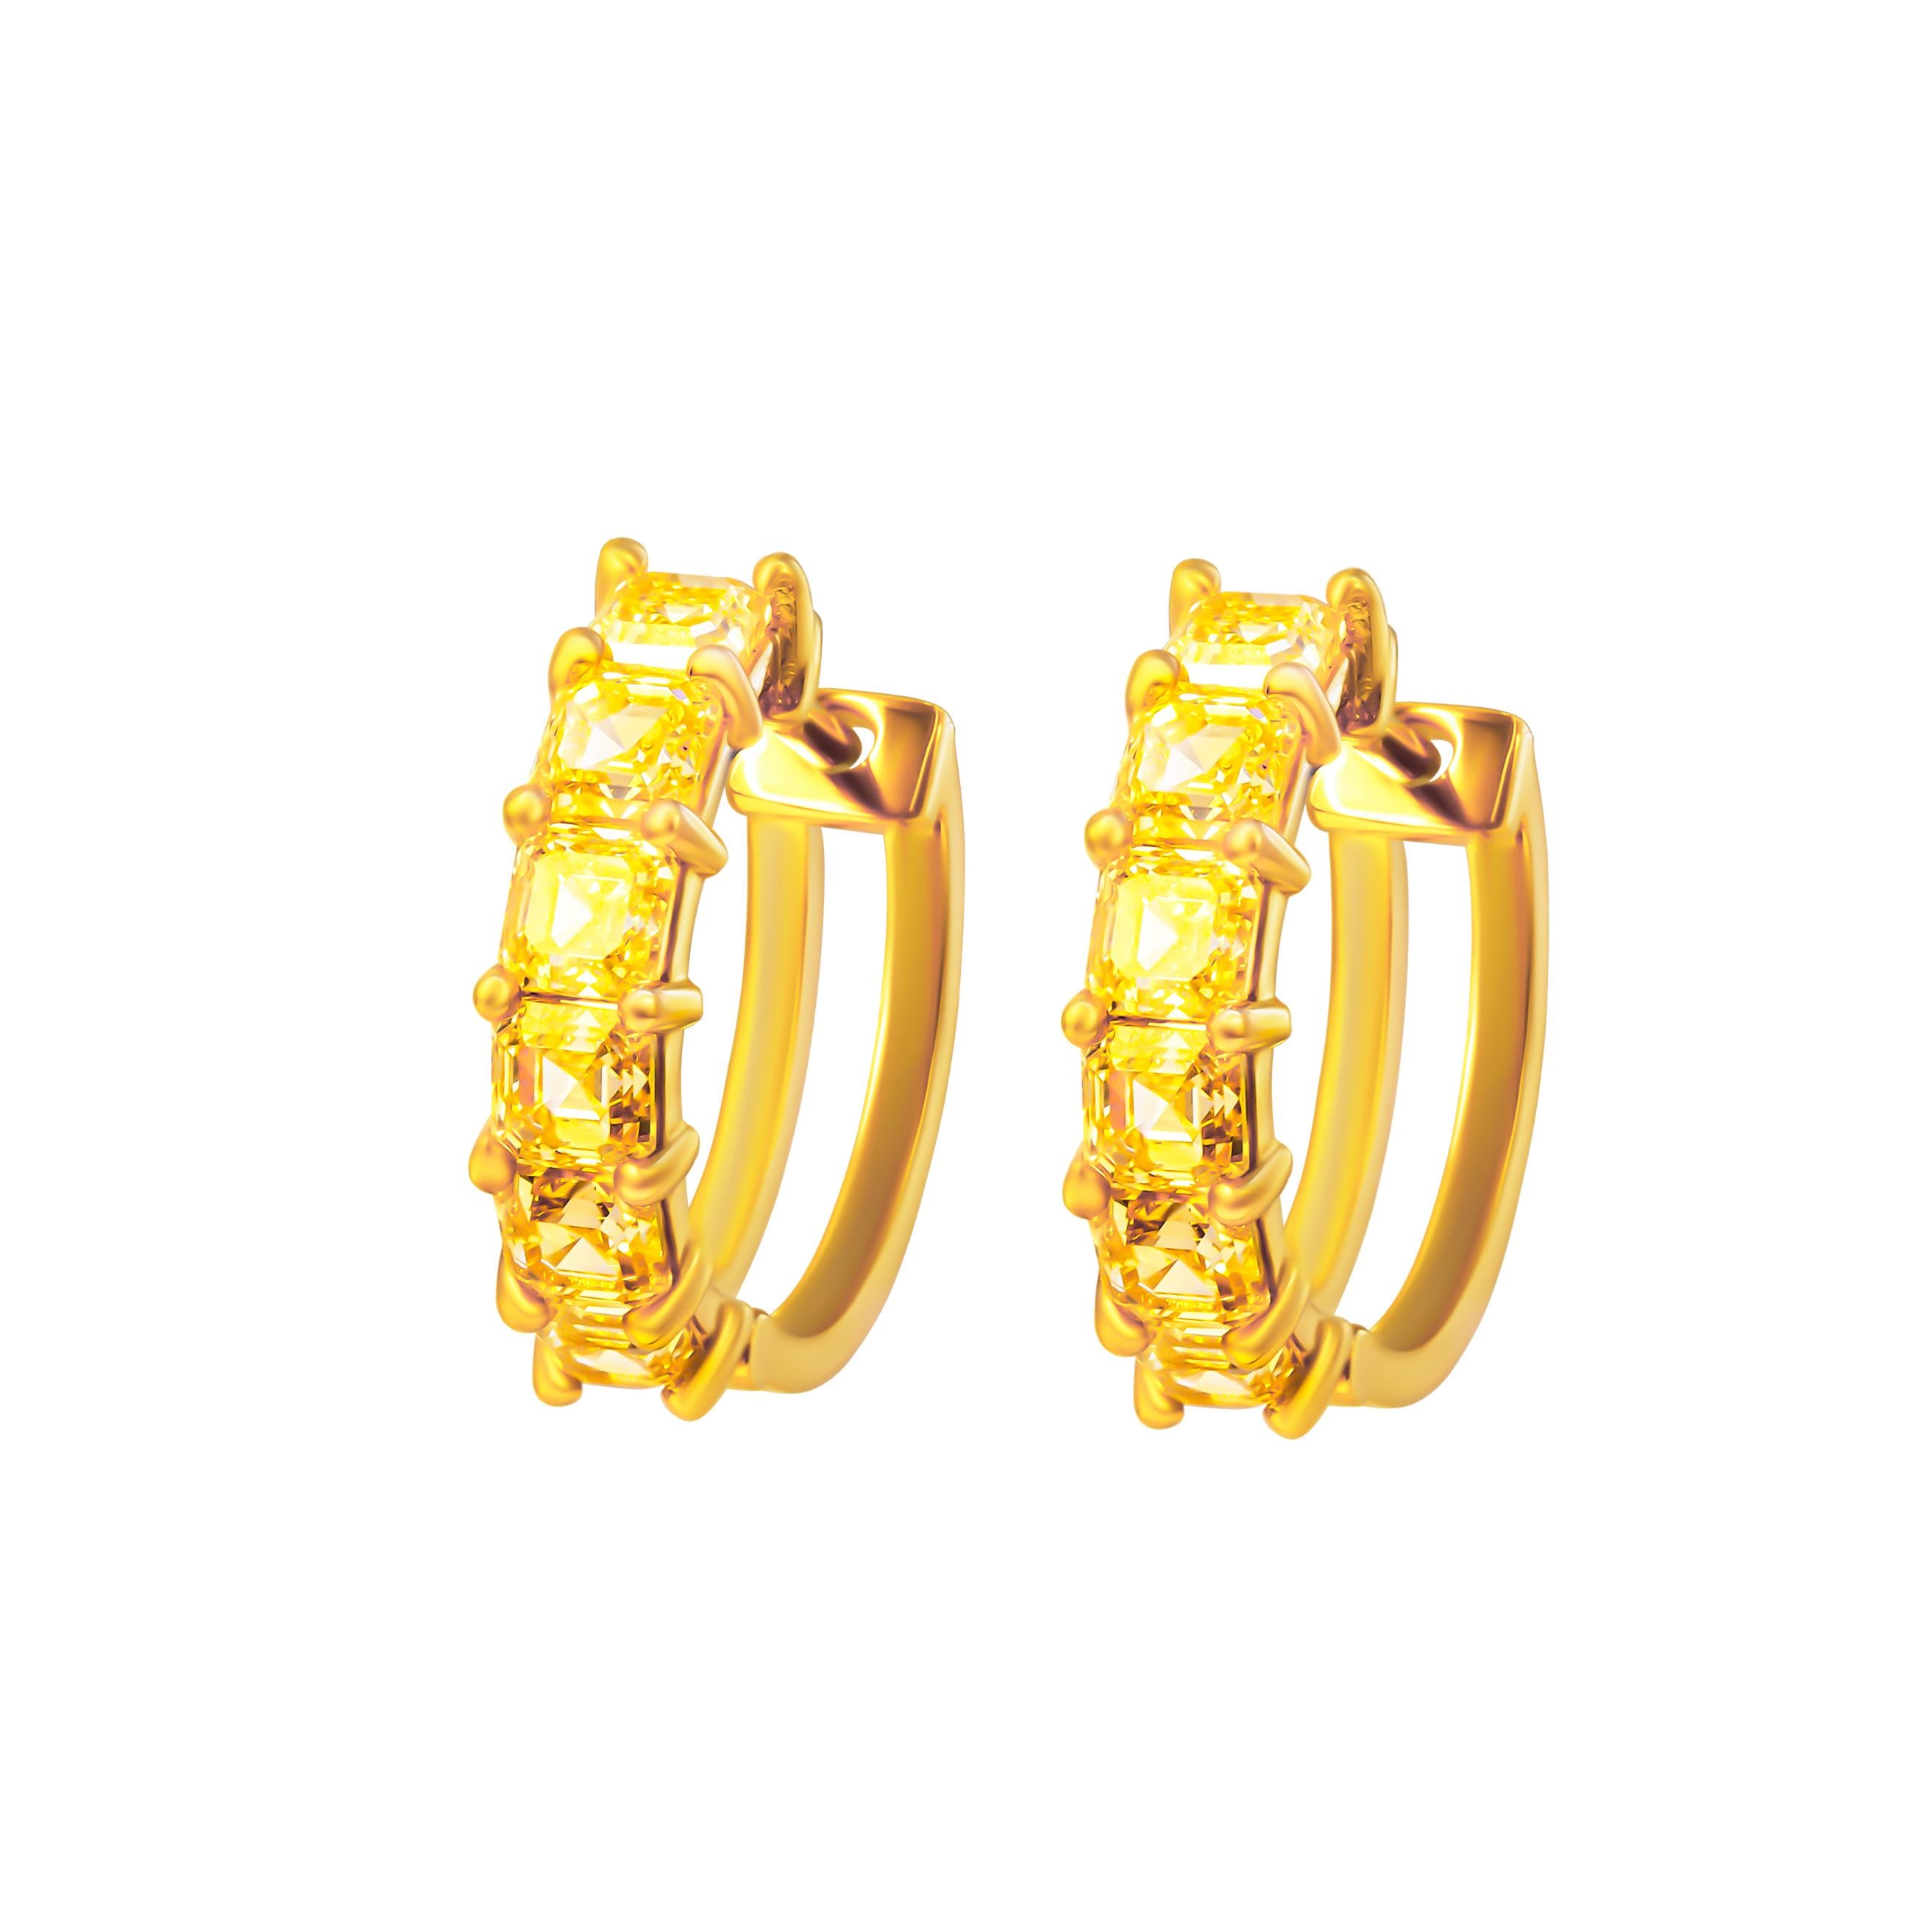 Rehaussez votre style avec nos extraordinaires boucles d'oreilles Fancy Yellow Asscher-cut, réalisées en luxueux or jaune 18 carats. Chaque boucle d'oreille est ornée d'un éblouissant diamant taillé en Asscher pesant 0,32 carat, pour un total de